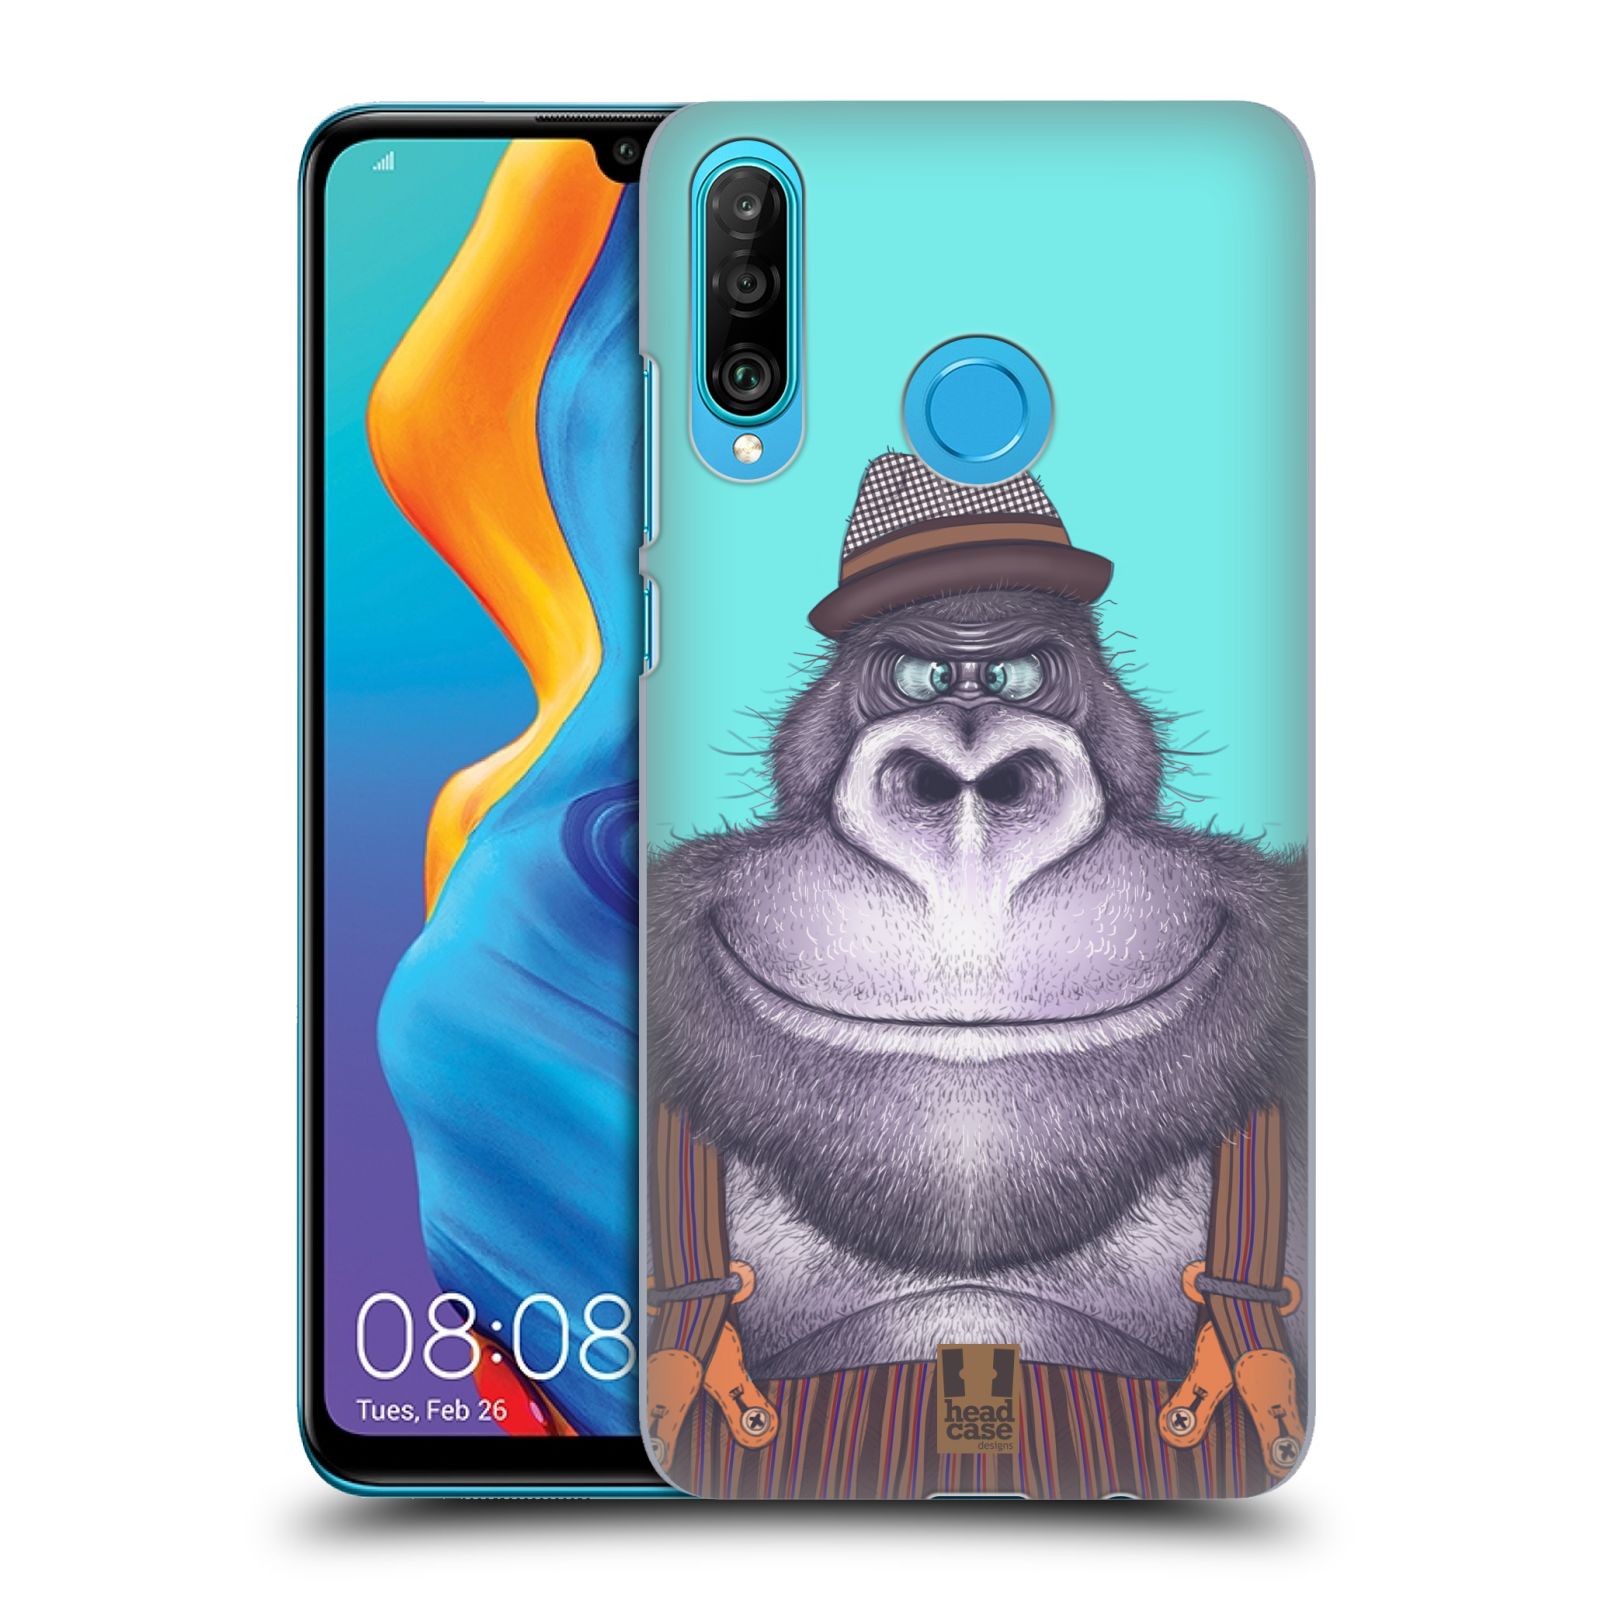 Pouzdro na mobil Huawei P30 LITE - HEAD CASE - vzor Kreslená zvířátka gorila